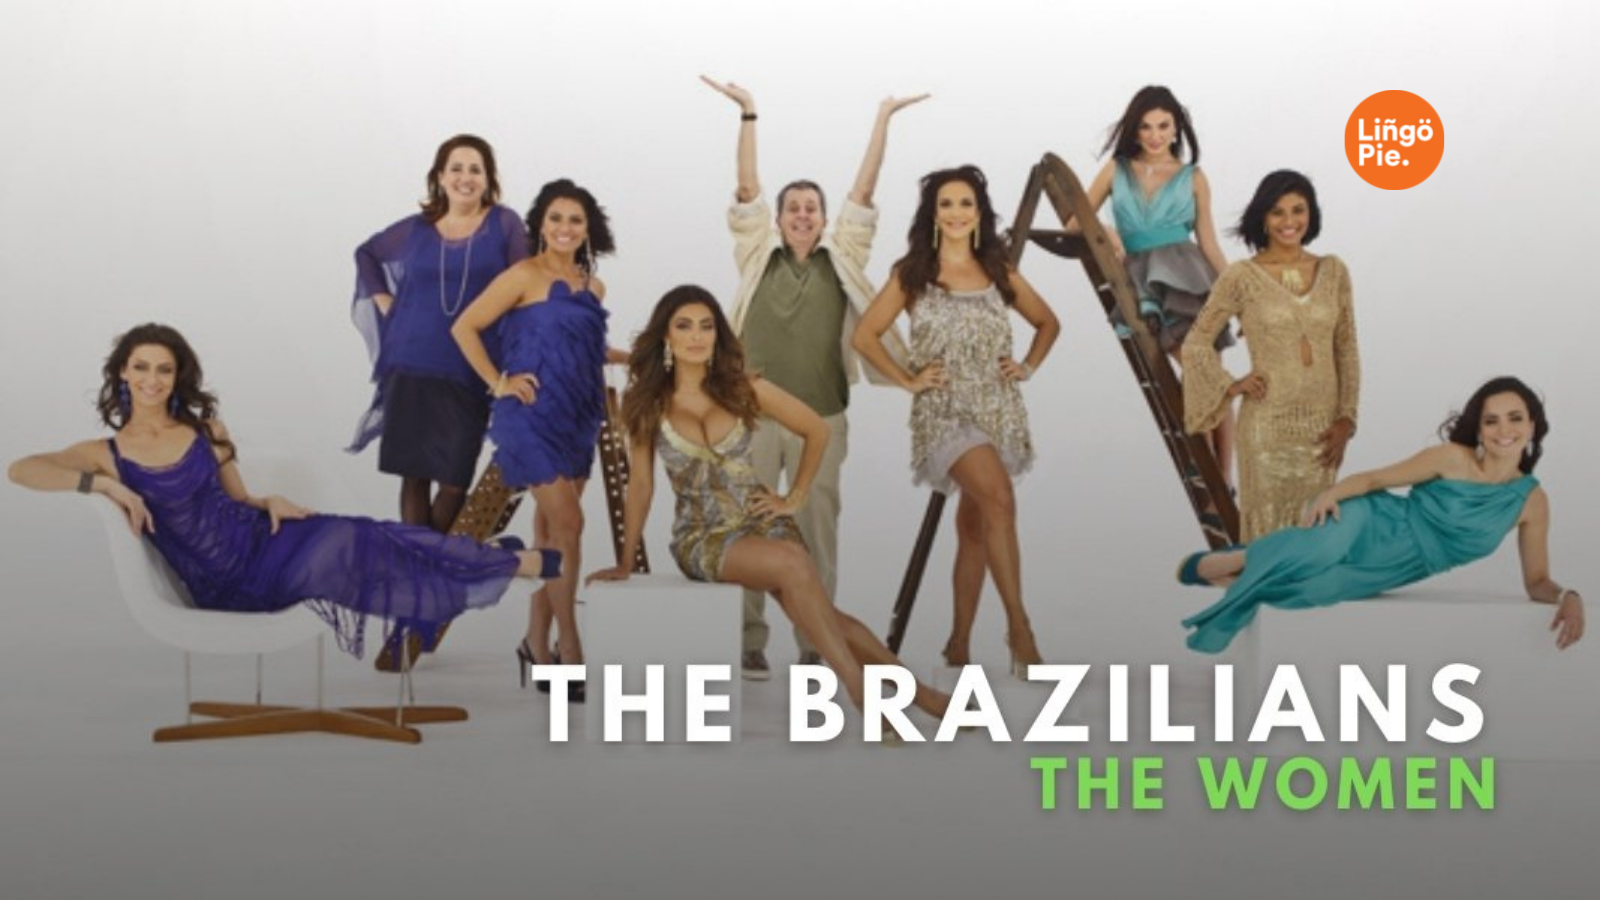 Brazilian Ladies on Lingopie.